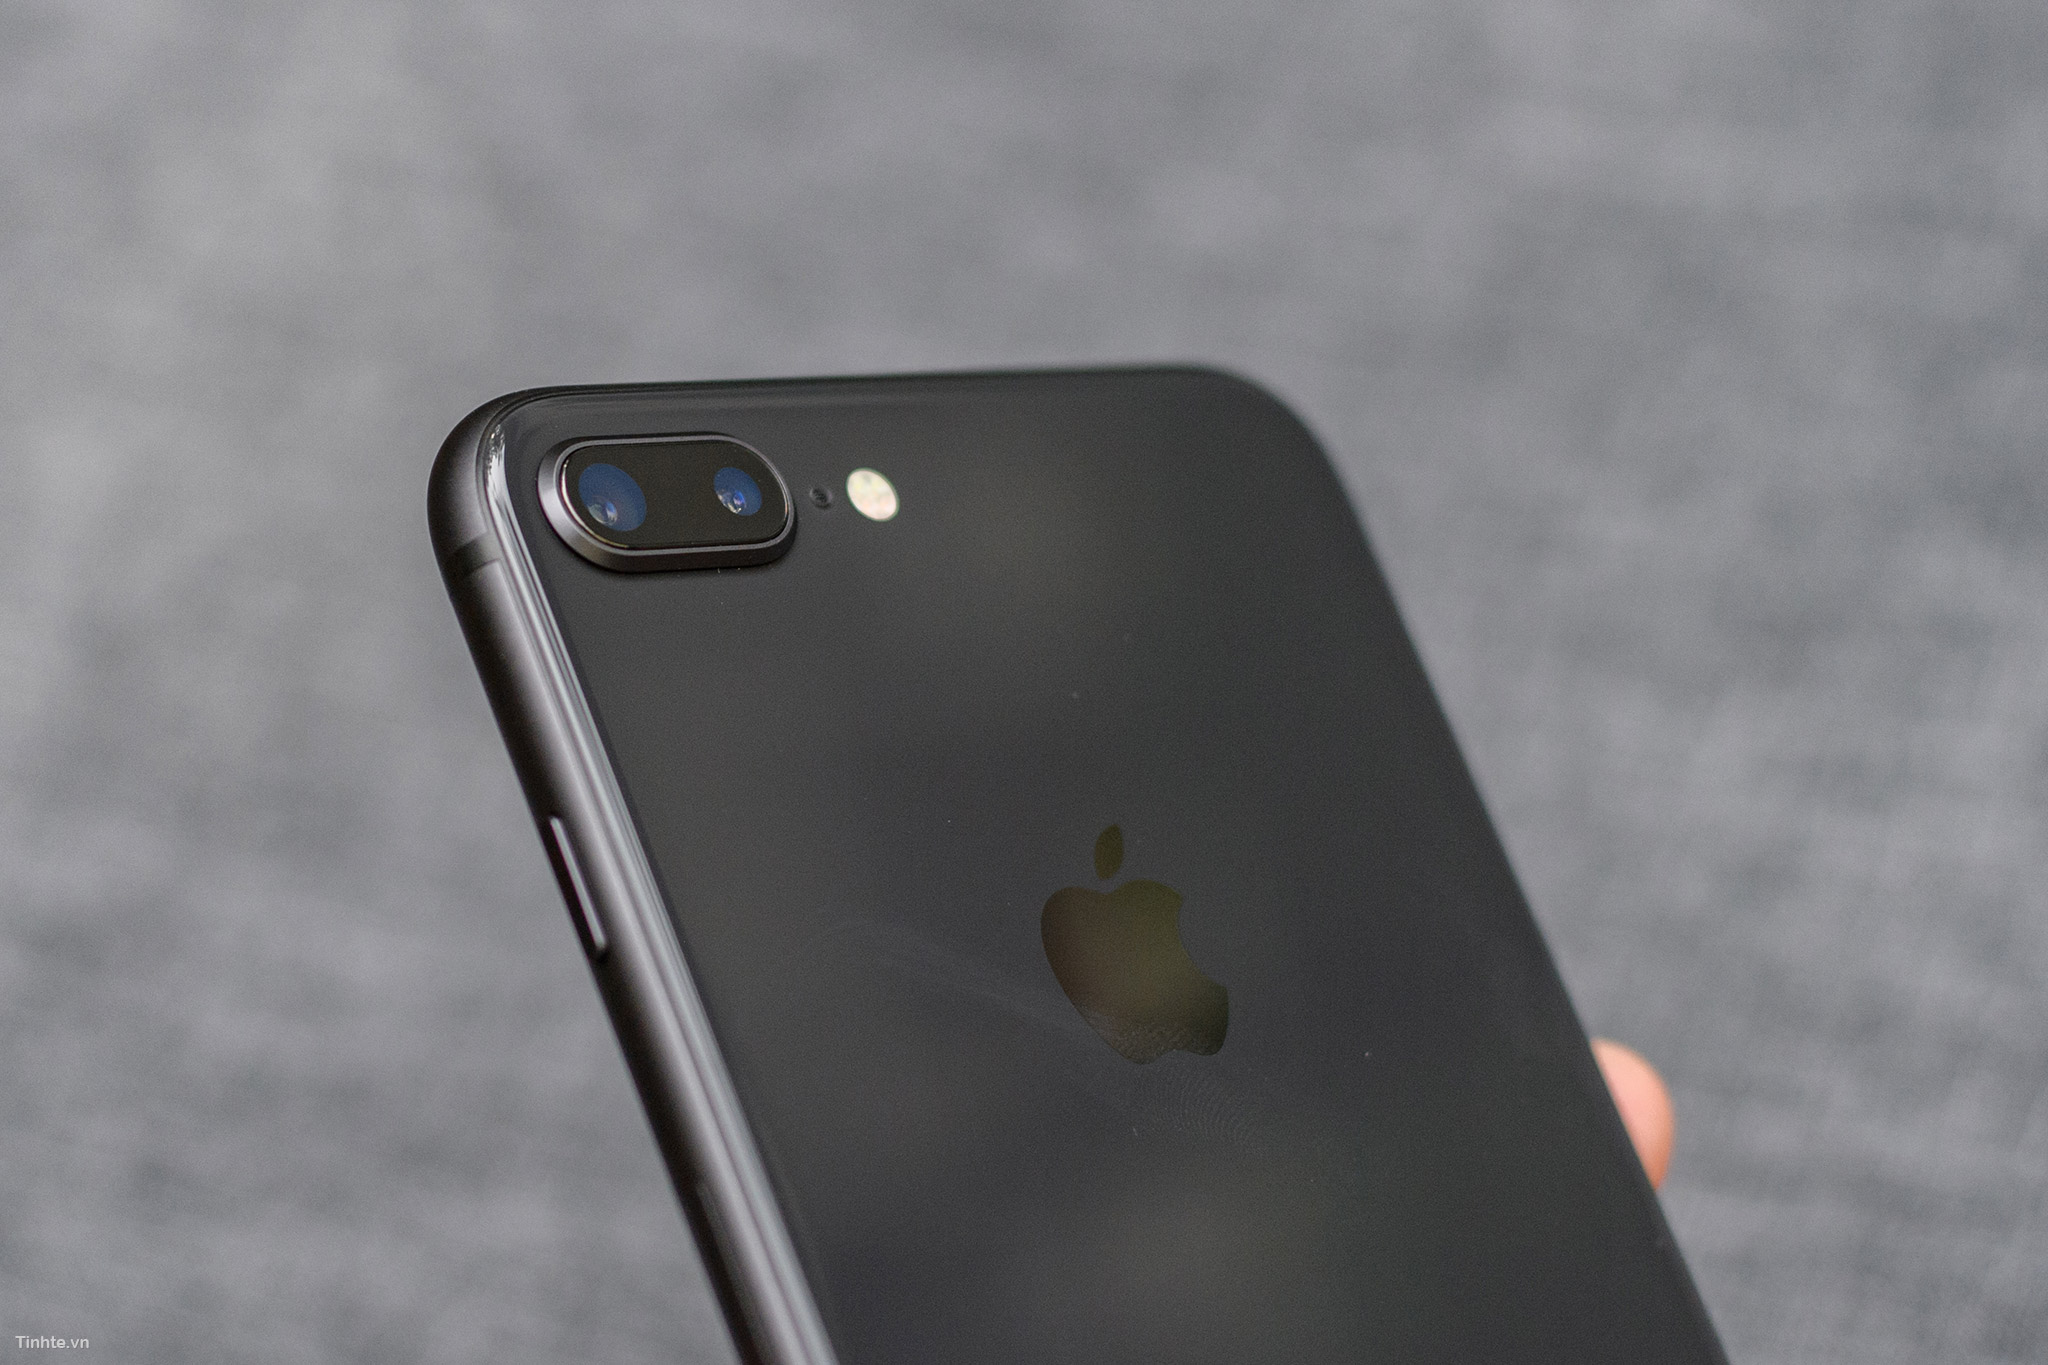 Với màu space gray cực kỳ sang trọng, iPhone 8/8 Plus của chúng tôi sẽ khiến bạn ám ảnh ngay từ lần đầu tiên nhìn thấy. Hãy đến xem hình ảnh chi tiết để tận hưởng vẻ đẹp đầy bí ẩn và sự tiện lợi của chiếc điện thoại này. Với khả năng chụp ảnh đỉnh cao và tốc độ xử lý nhanh, chiếc iPhone 8/8 Plus sẽ làm cho bạn hoàn toàn hài lòng.